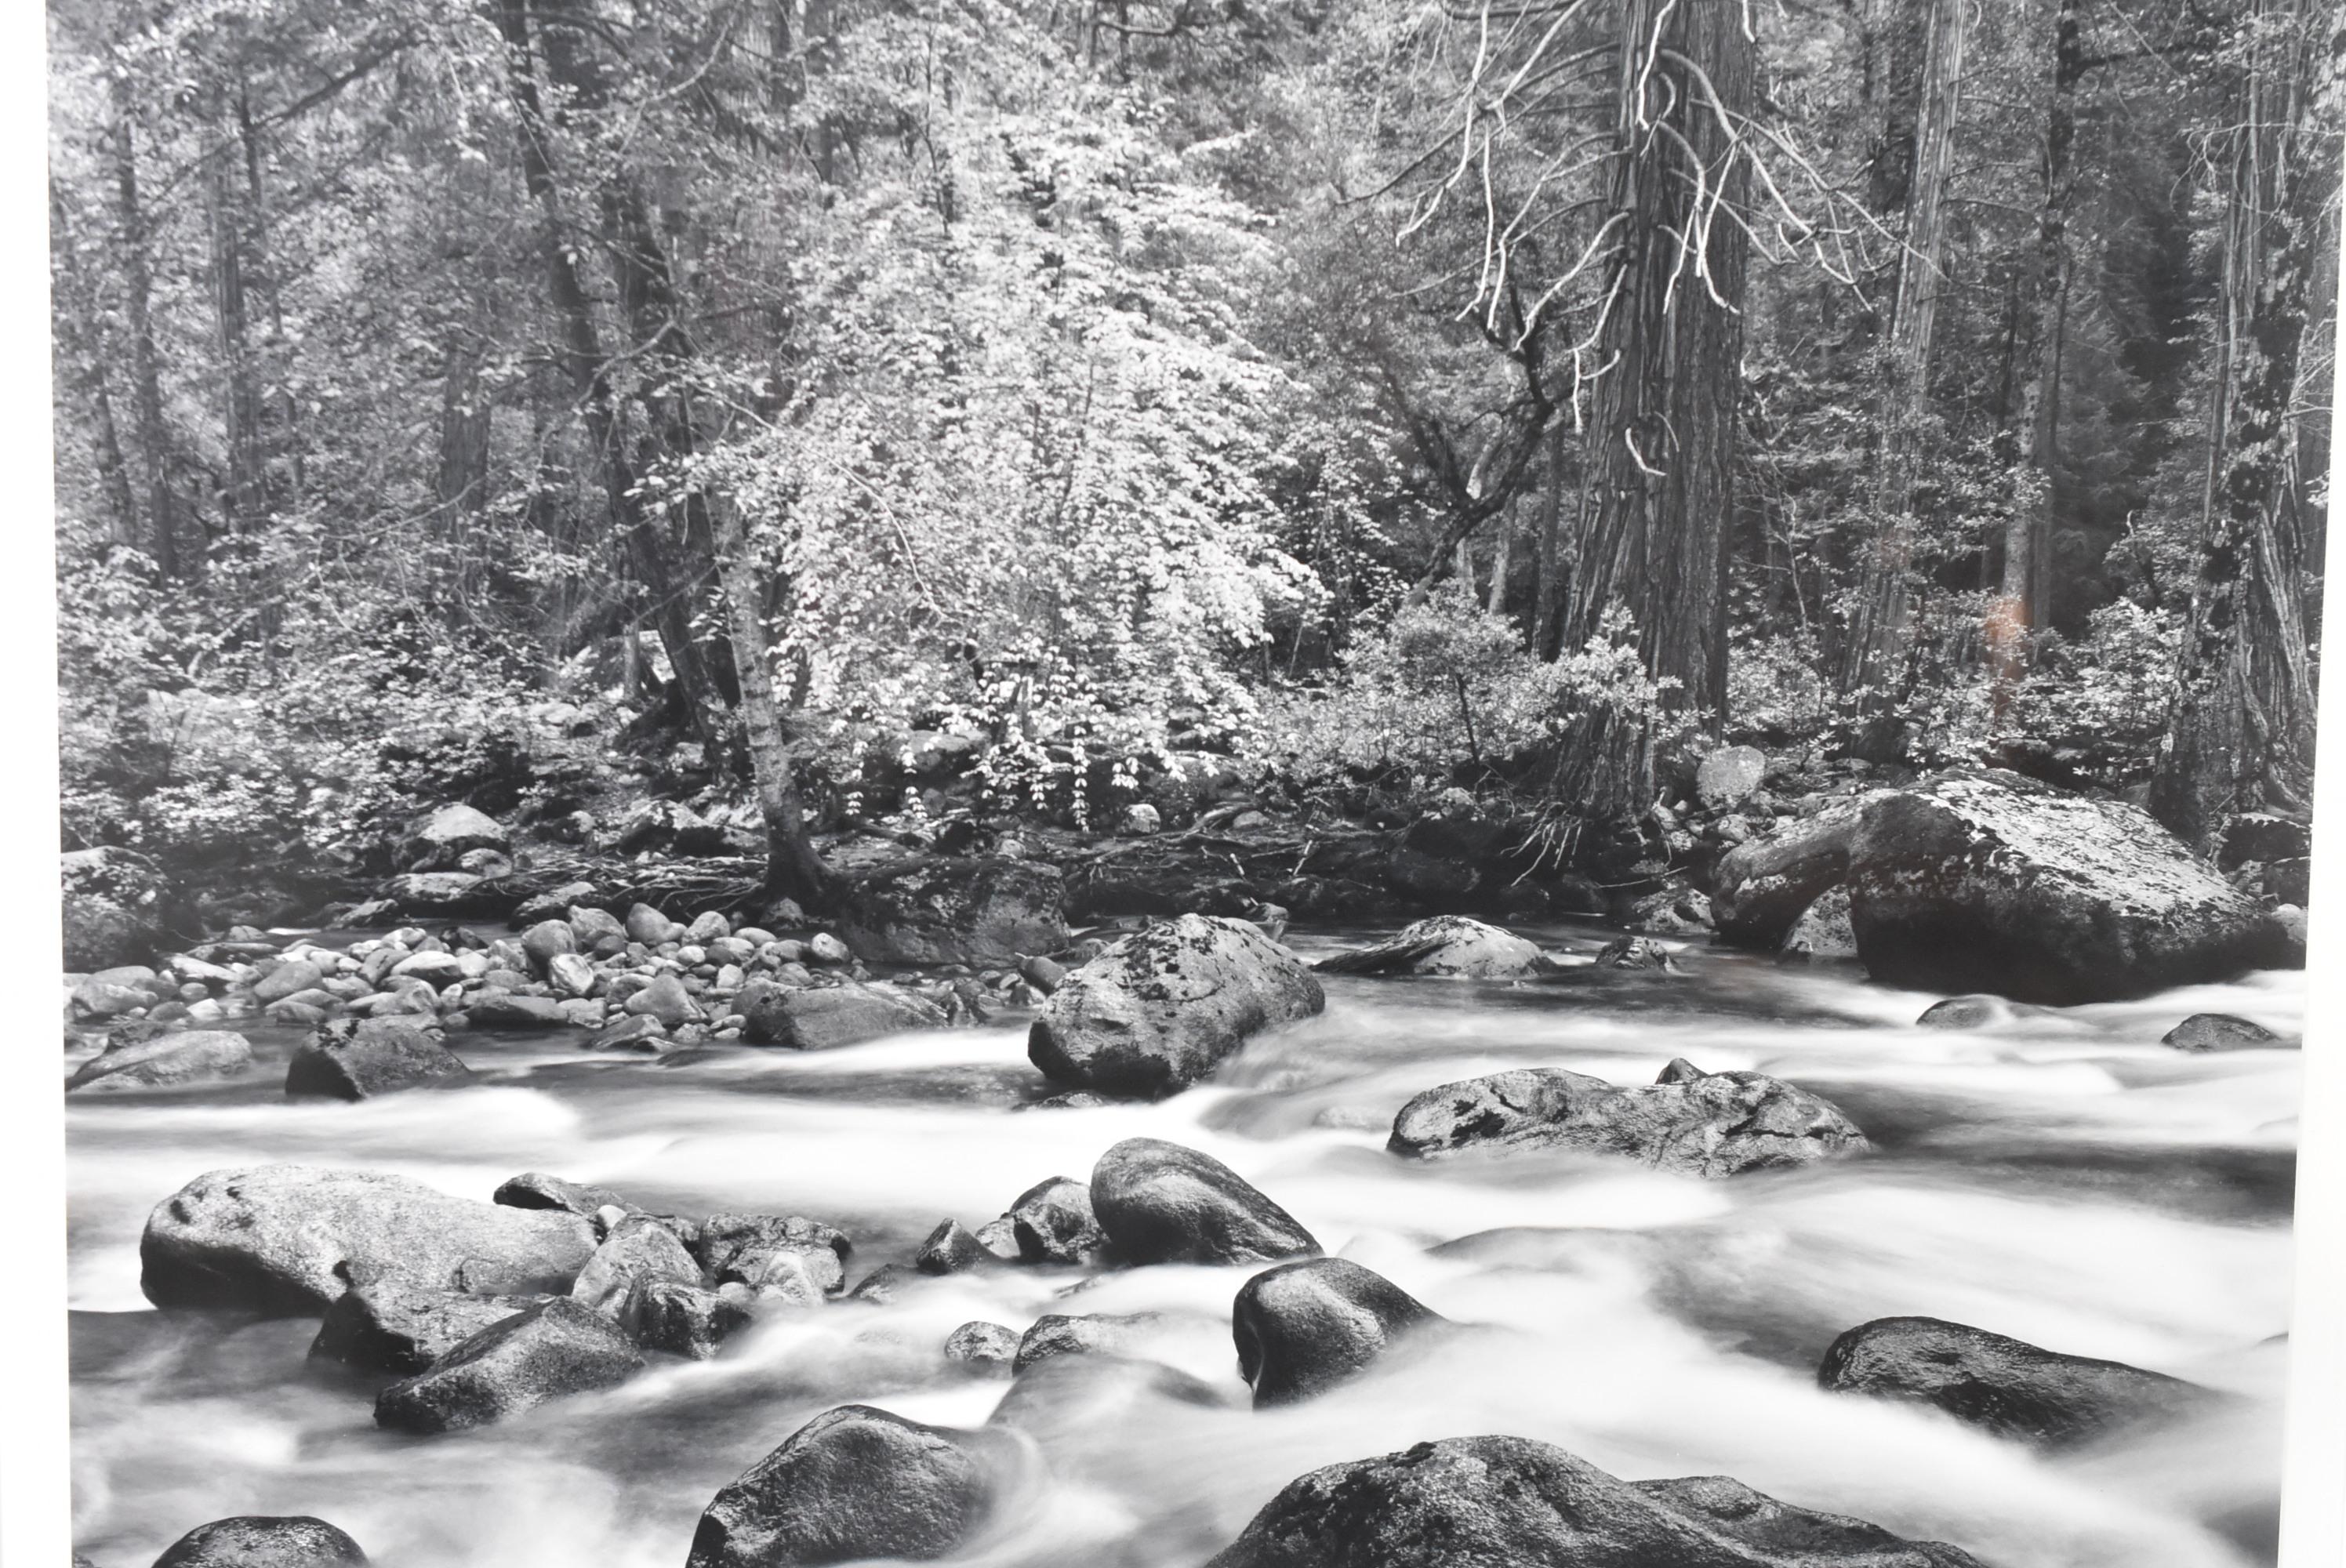 Original Schwarzweiß-Silbergelatineabzug von John Sexton, signiert und datiert 1983. Label Merced River and Forest, Yosemite Valley, CA, Negativ von 1983, Abzug von 1986. Gesamtgröße 17